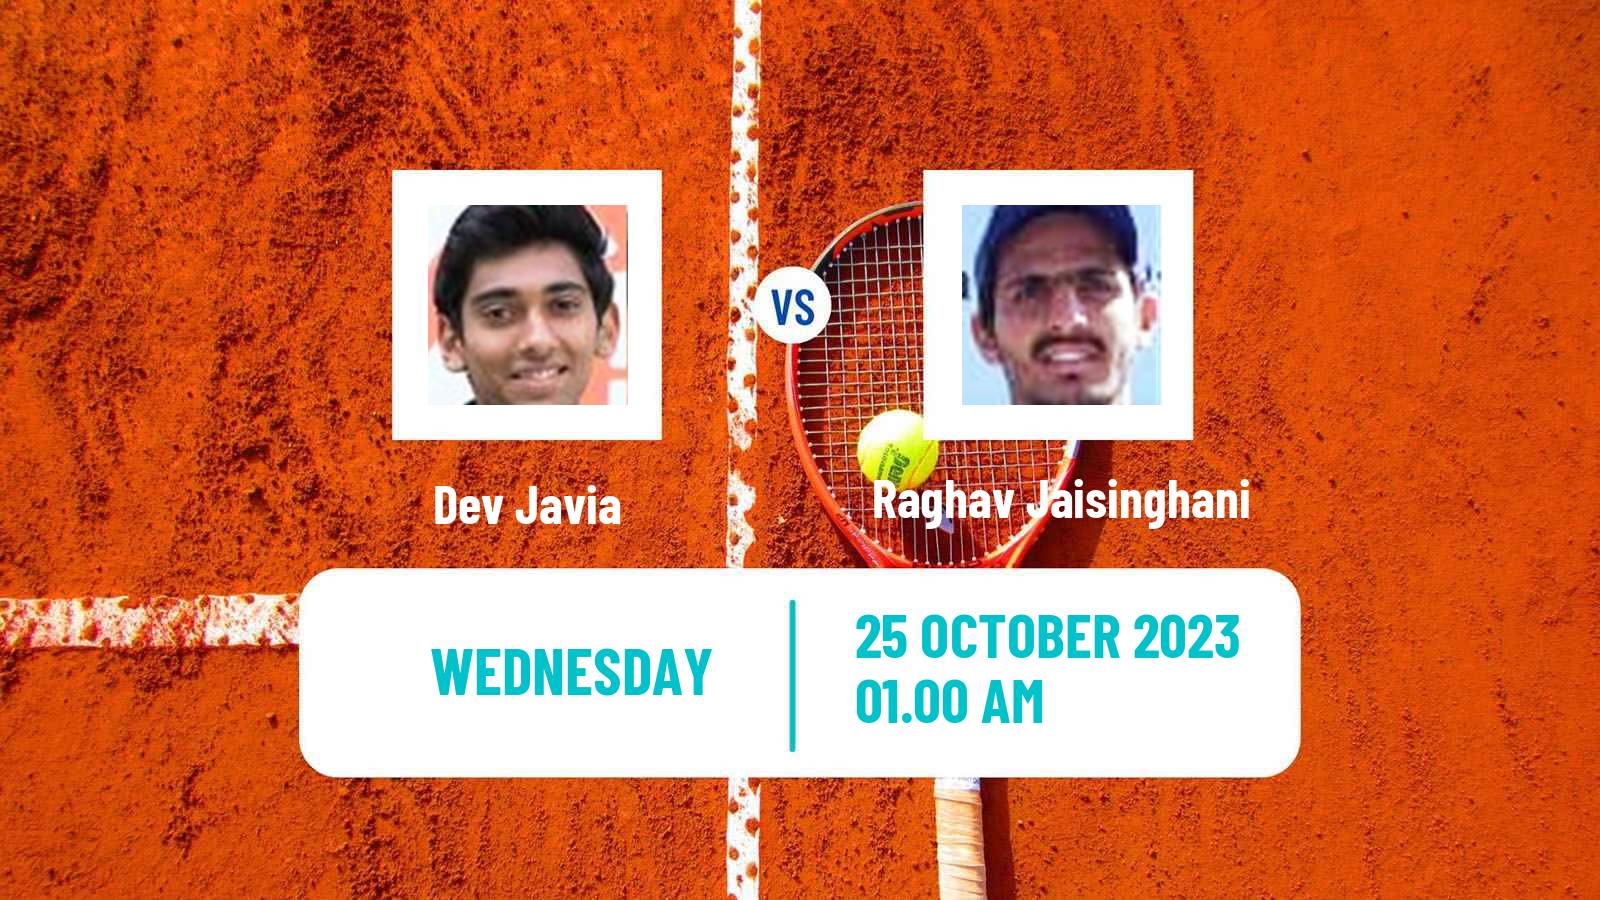 Tennis ITF M15 Davangere Men Dev Javia - Raghav Jaisinghani